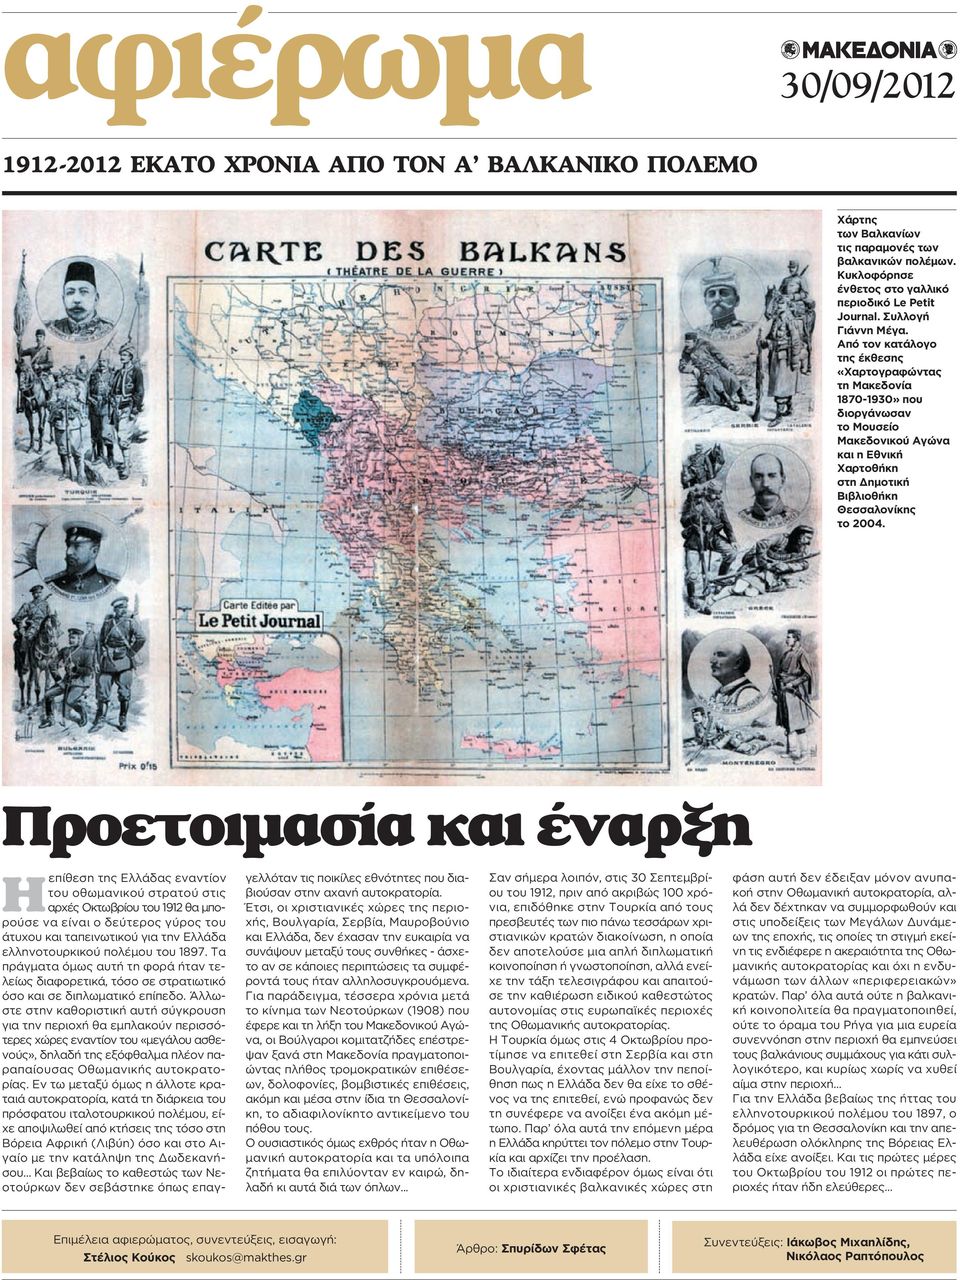 Από τον κατάλογο της έκθεσης «Χαρτογραφώντας τη Μακεδονία 1870-1930» που διοργάνωσαν το Μουσείο Μακεδονικού Αγώνα και η Εθνική Χαρτοθήκη στη Δημοτική Βιβλιοθήκη Θεσσαλονίκης το 2004.